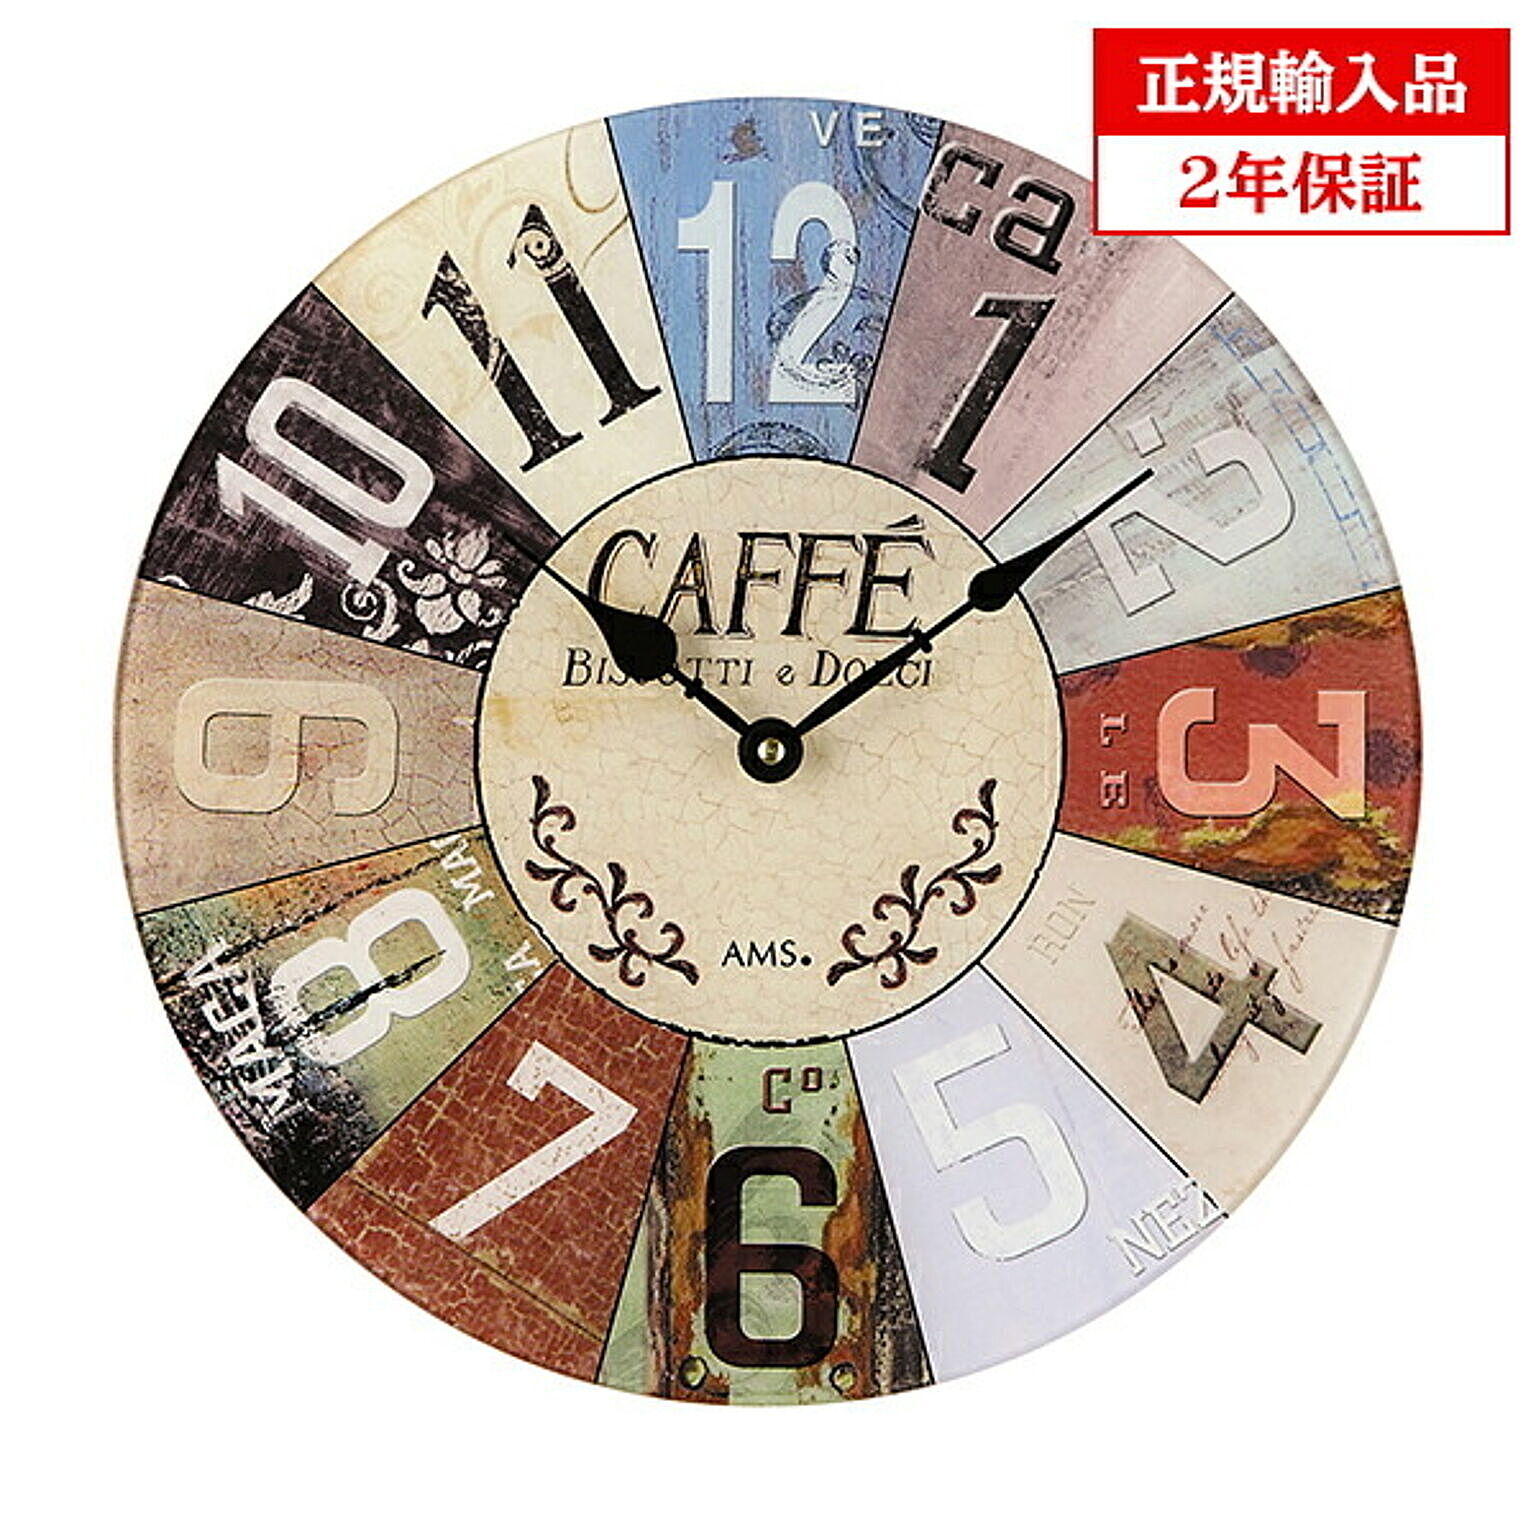 アームス社 AMS 9424 クオーツ 掛け時計 (掛時計) CAFFE ドイツ製 【正規輸入品】【メーカー保証2年】